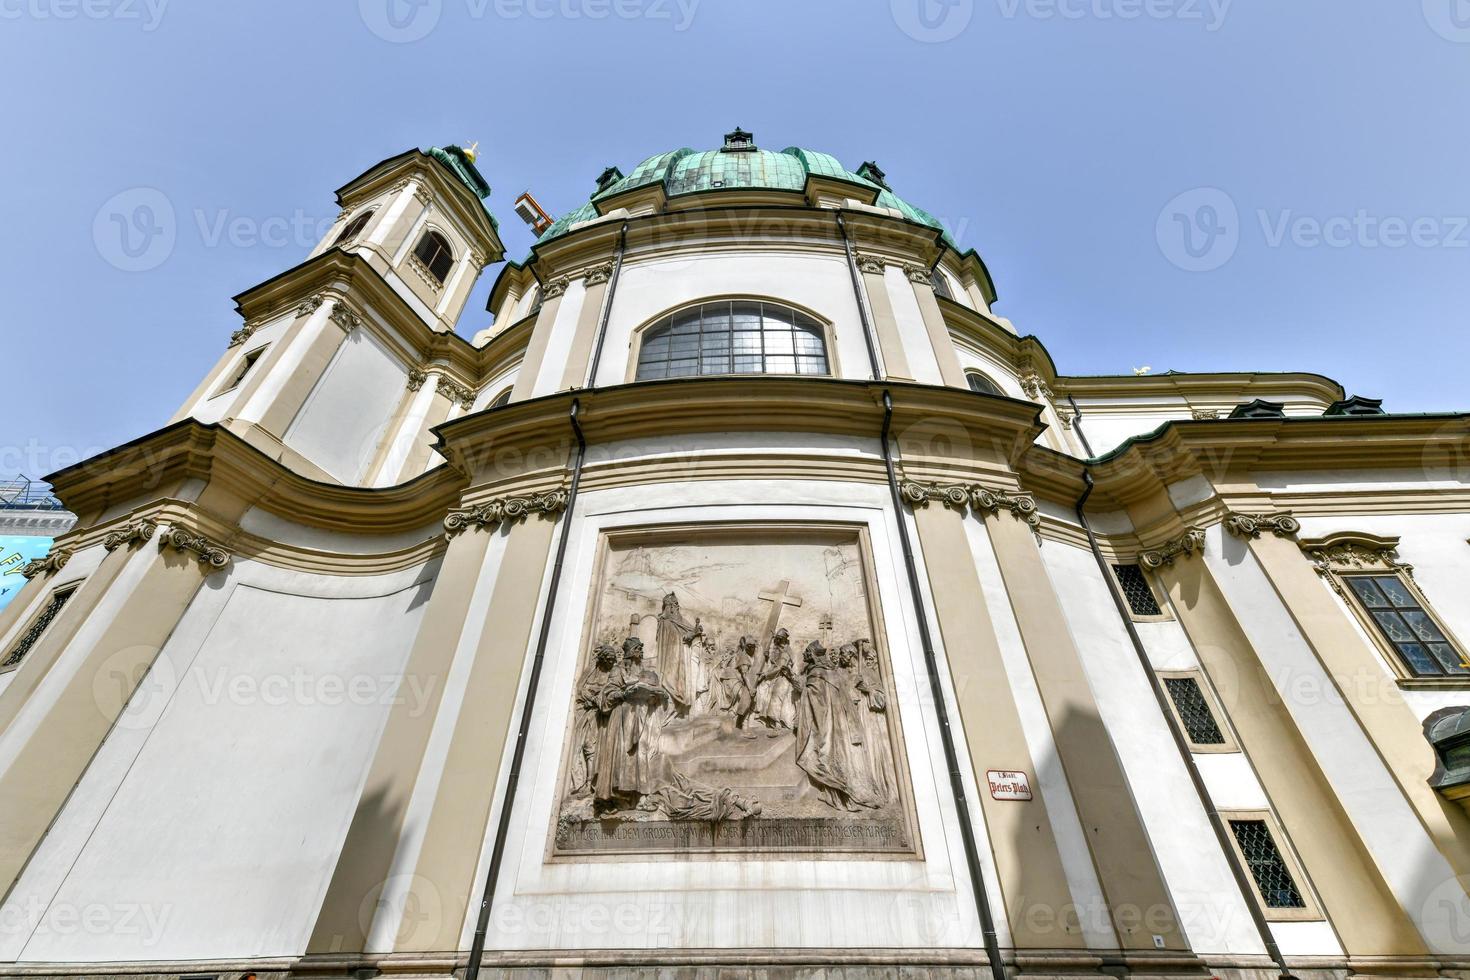 st. de Peter catholique église peterskirche sur saisir rue dans vienne, L'Autriche photo